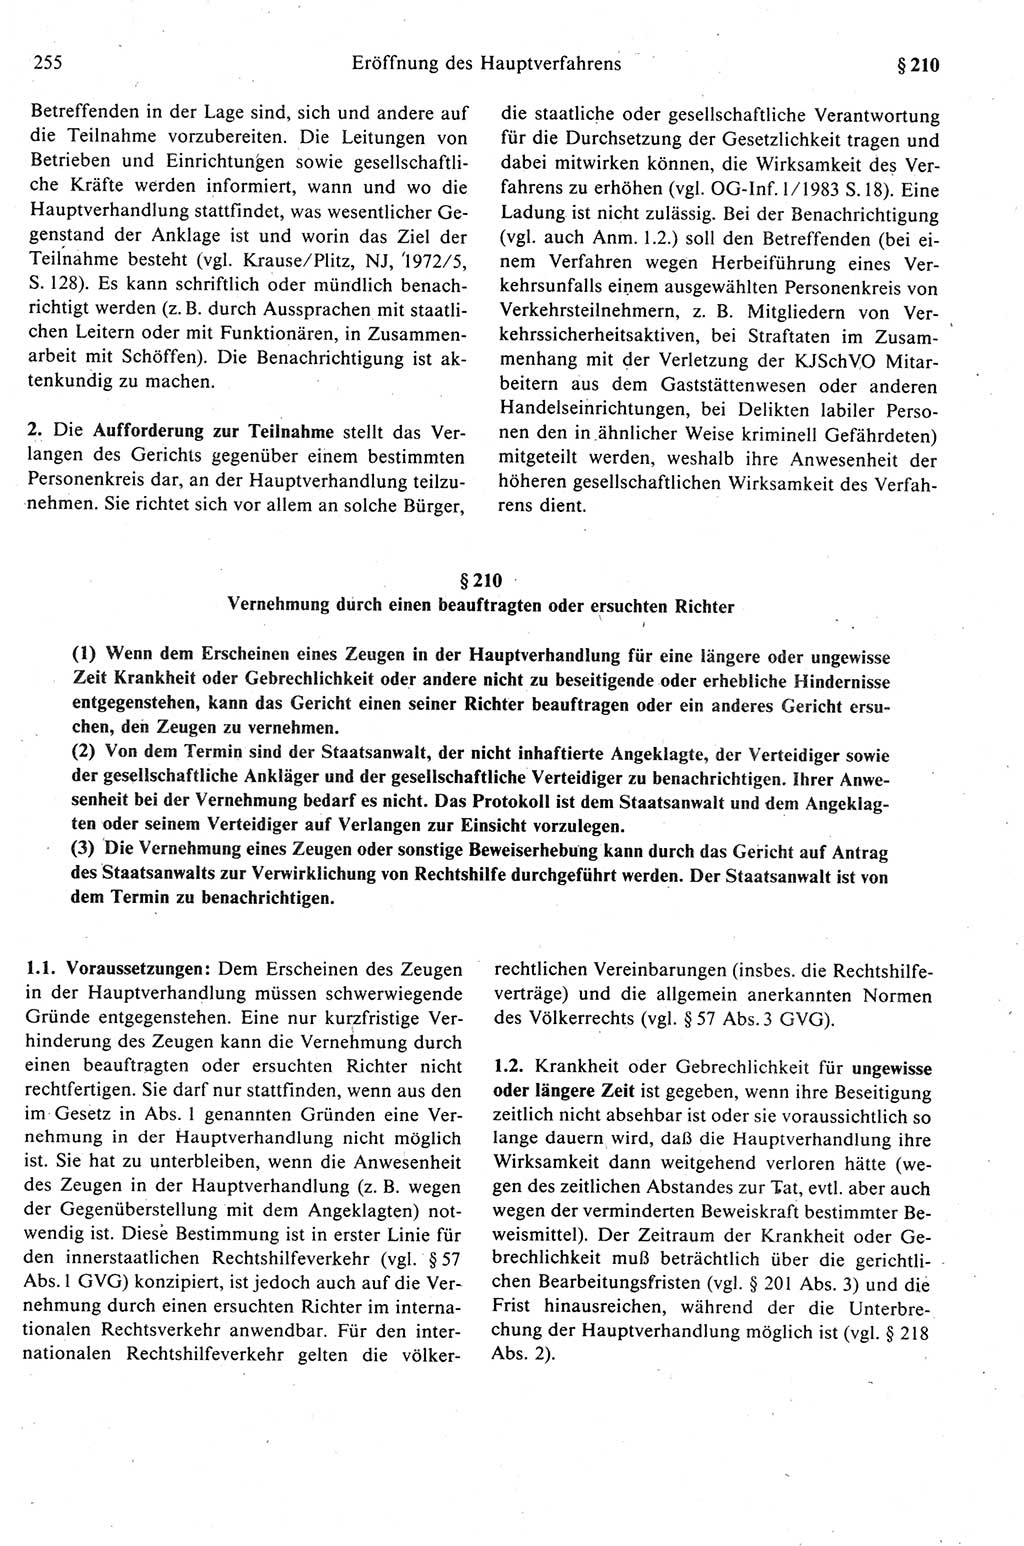 Strafprozeßrecht der DDR (Deutsche Demokratische Republik), Kommentar zur Strafprozeßordnung (StPO) 1989, Seite 255 (Strafprozeßr. DDR Komm. StPO 1989, S. 255)